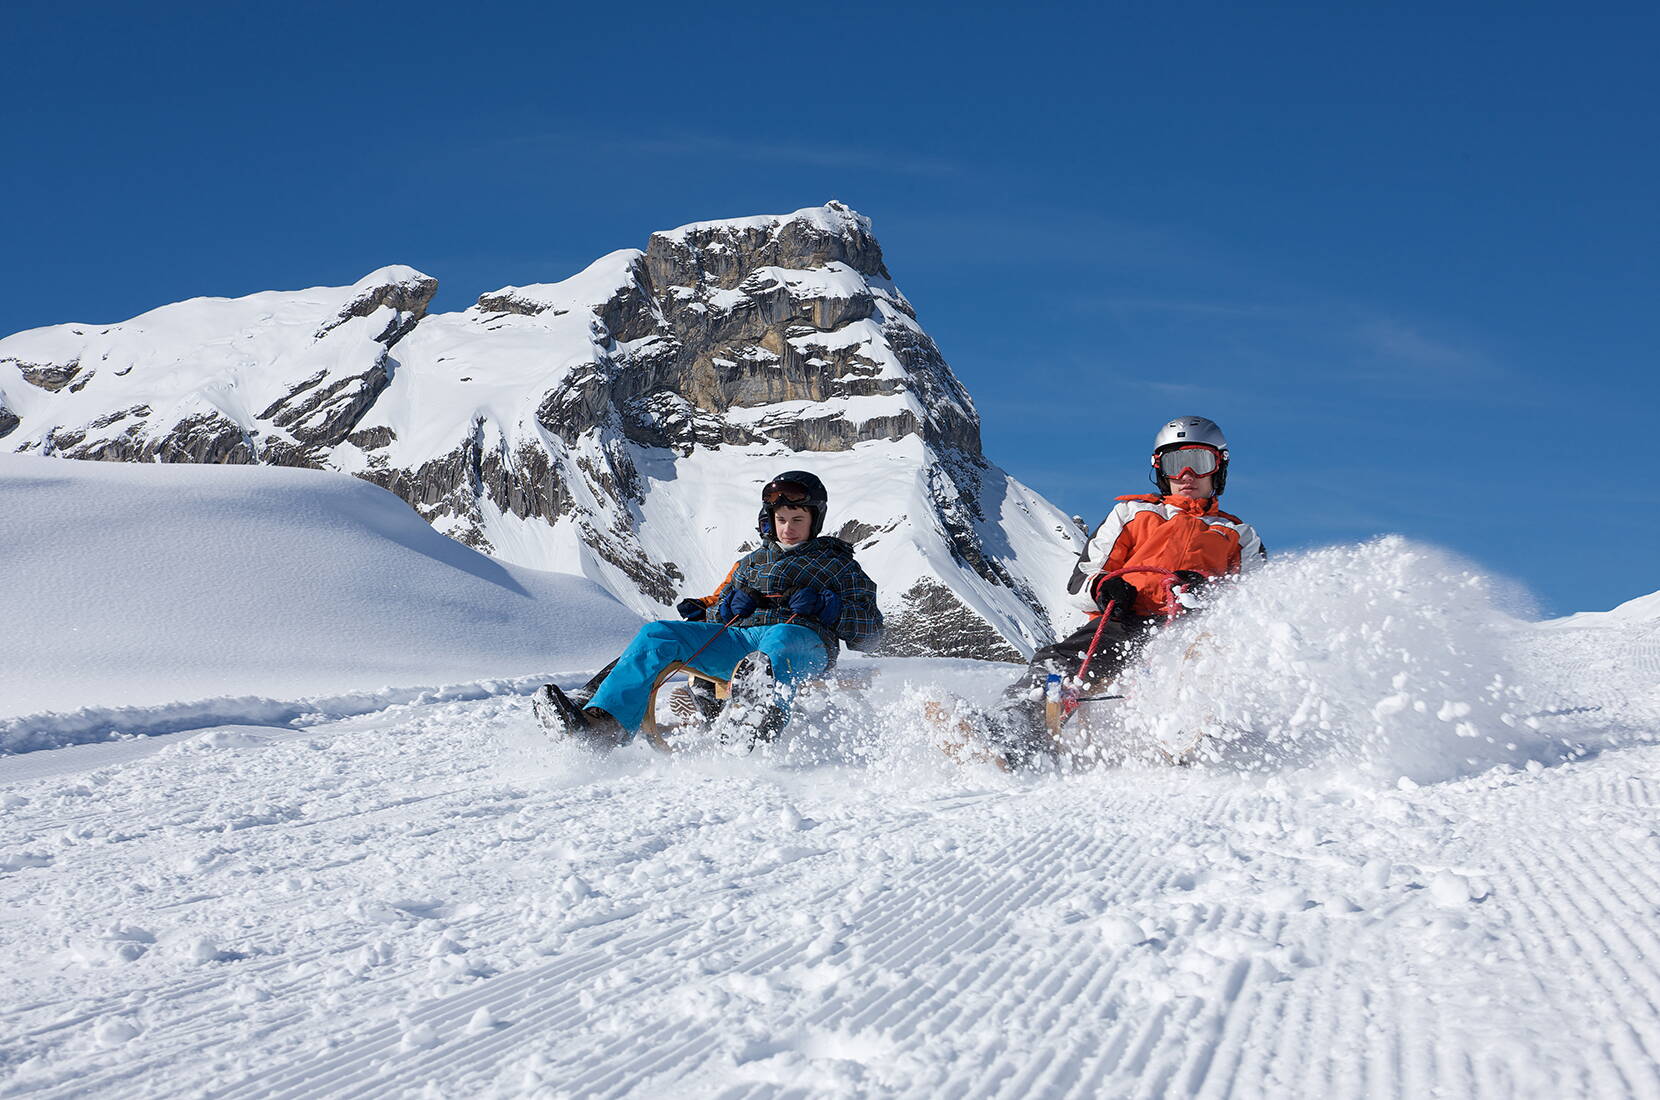 Der acht Kilometer lange Schlittelweg mit zirka 800 Meter Höhendifferenz ist der längste Schlittelweg der Zentralschweiz. Die Fahrt von Melchsee-Frutt zur Stöckalp ist ein Erlebnis für Gross und Klein.